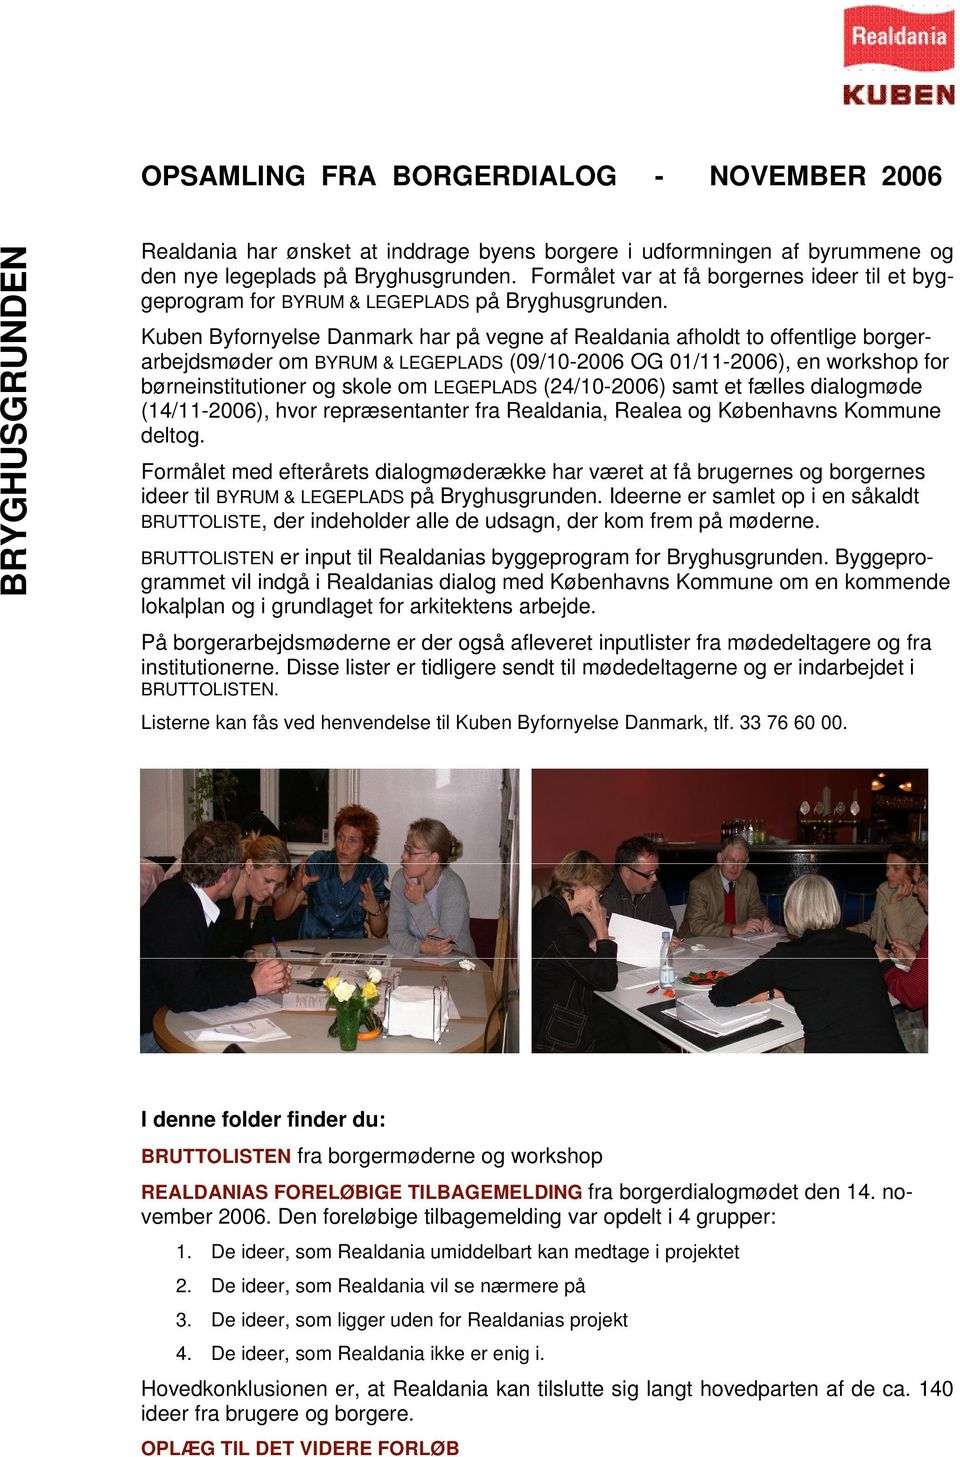 Kuben Byfornyelse Danmark har på vegne af Realdania afholdt to offentlige borgerarbejdsmøder om BYRUM & LEGEPLADS (09/10-2006 OG 01/11-2006), en workshop for børneinstitutioner og skole om LEGEPLADS